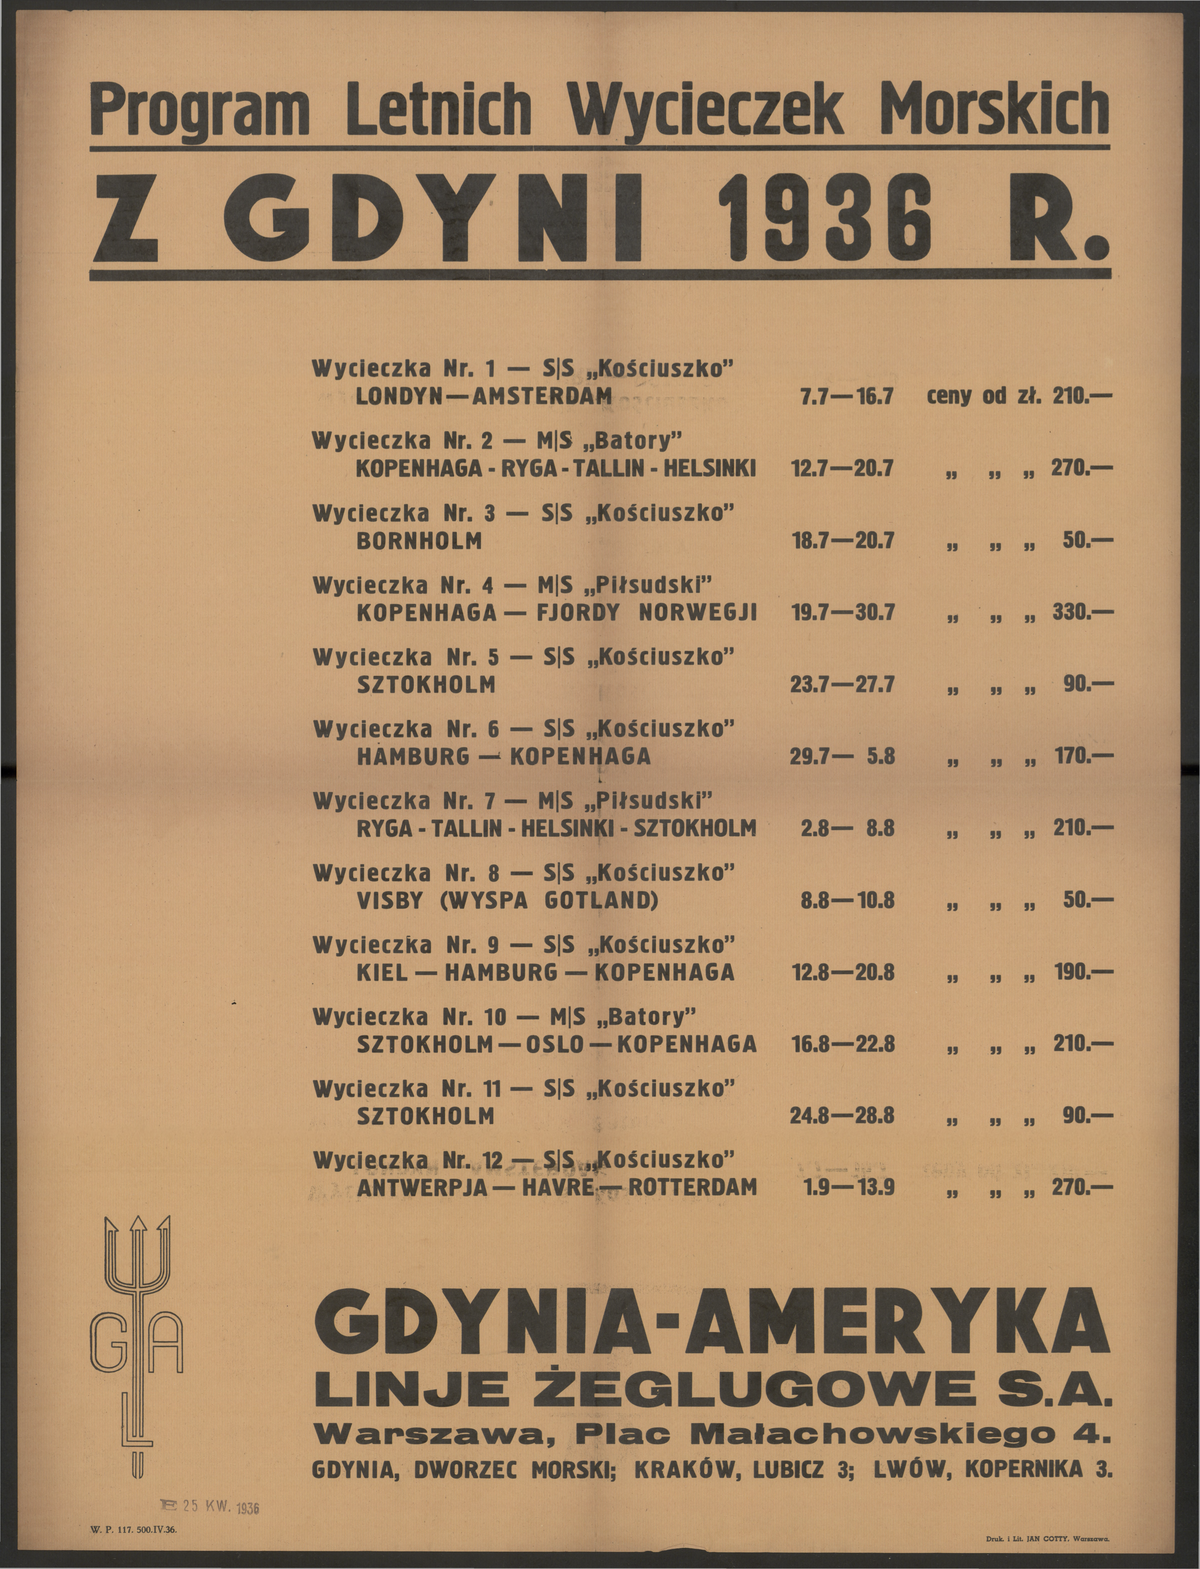 Program letnich wycieczek morskich z Gdyni w 1936 roku